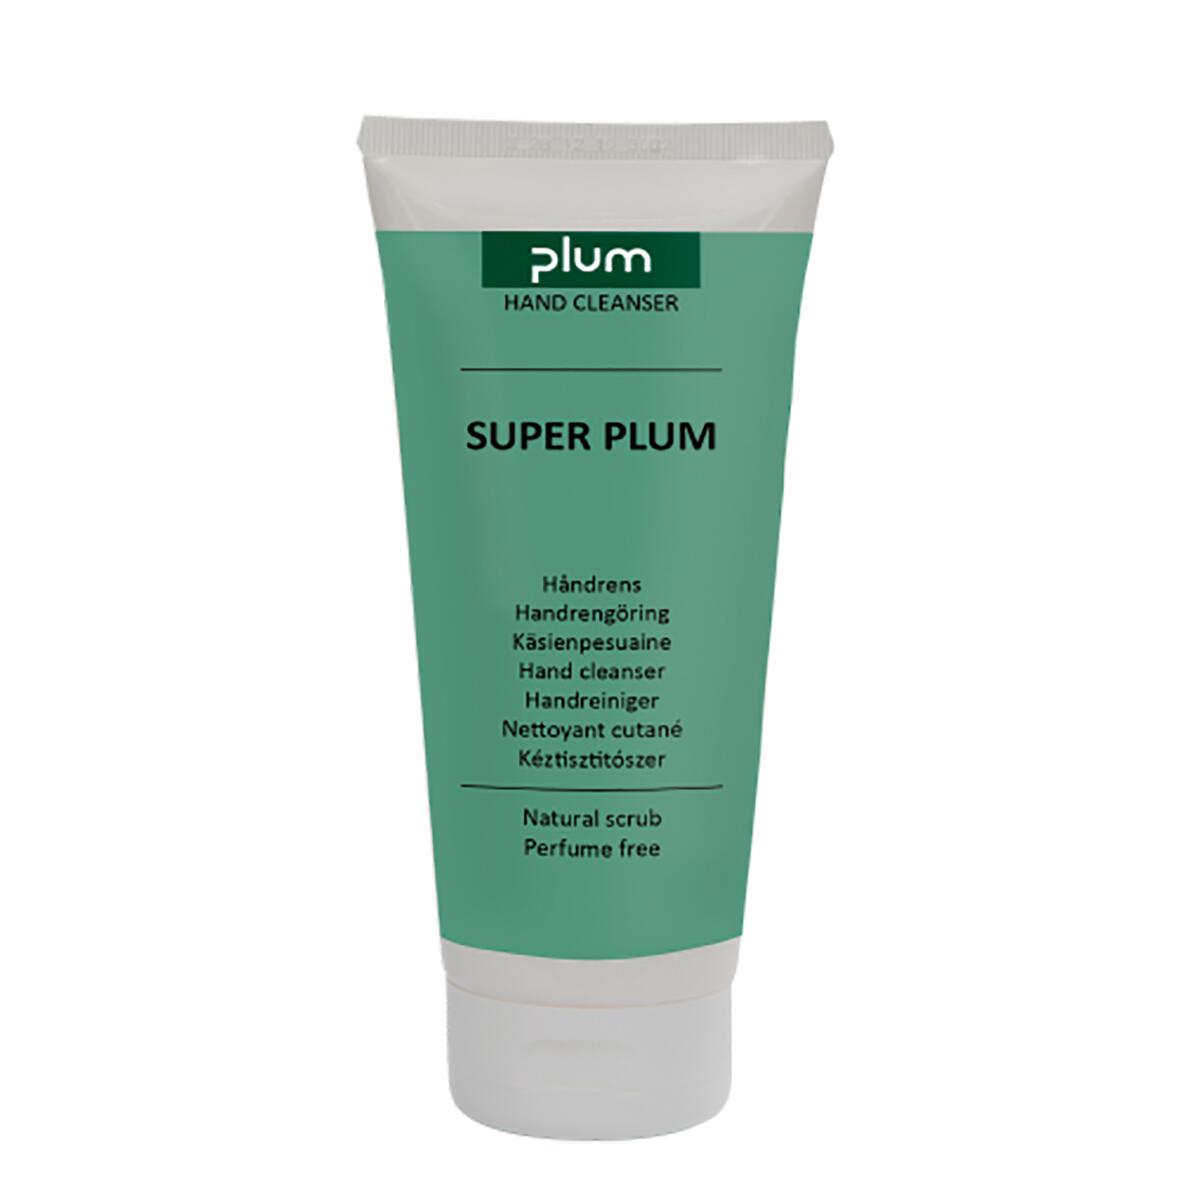 B-Safety Milde Reinigungspaste PLUM Super Plum für Hände, Tube, Inhalt 250 ml Standard 1 ZOOM